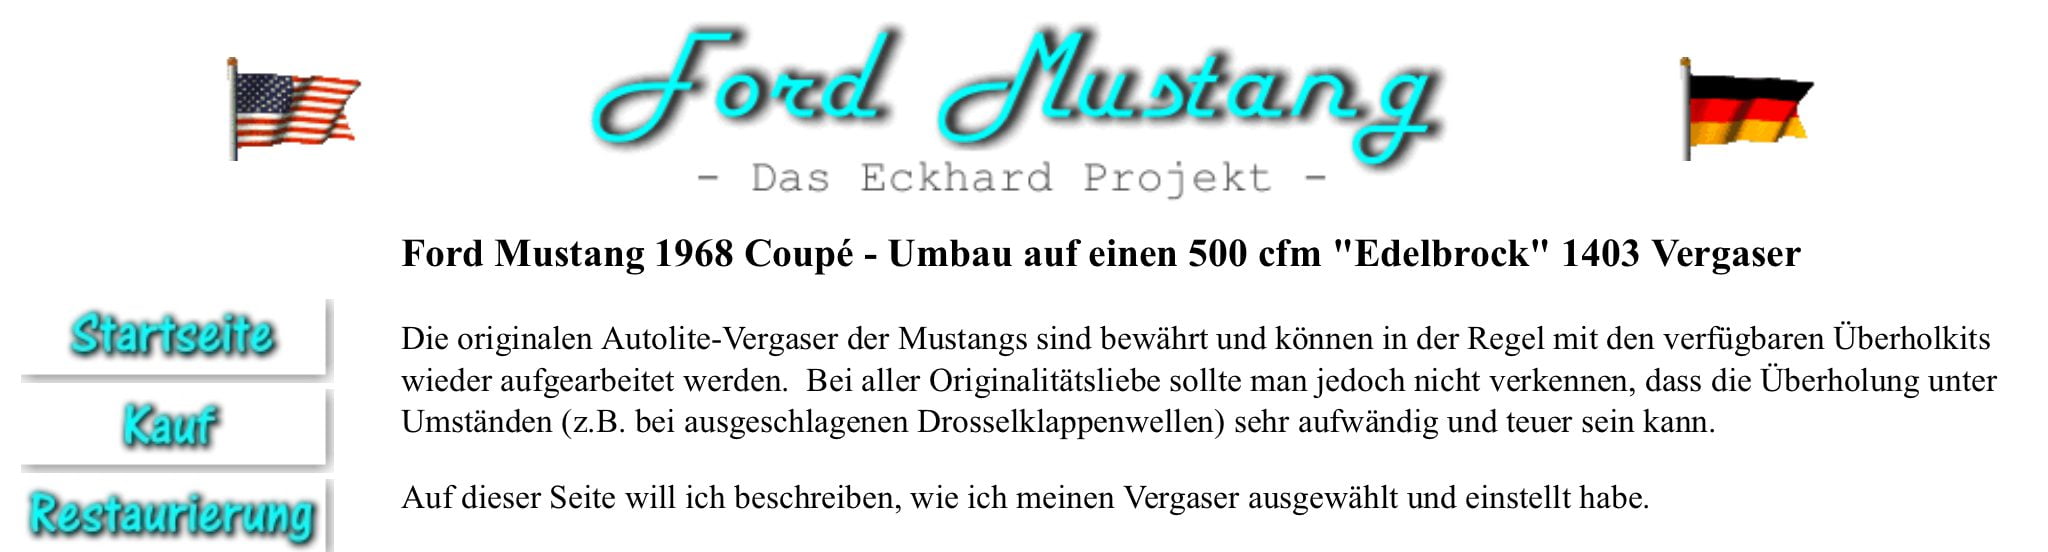 Das Eckhard-Projekt